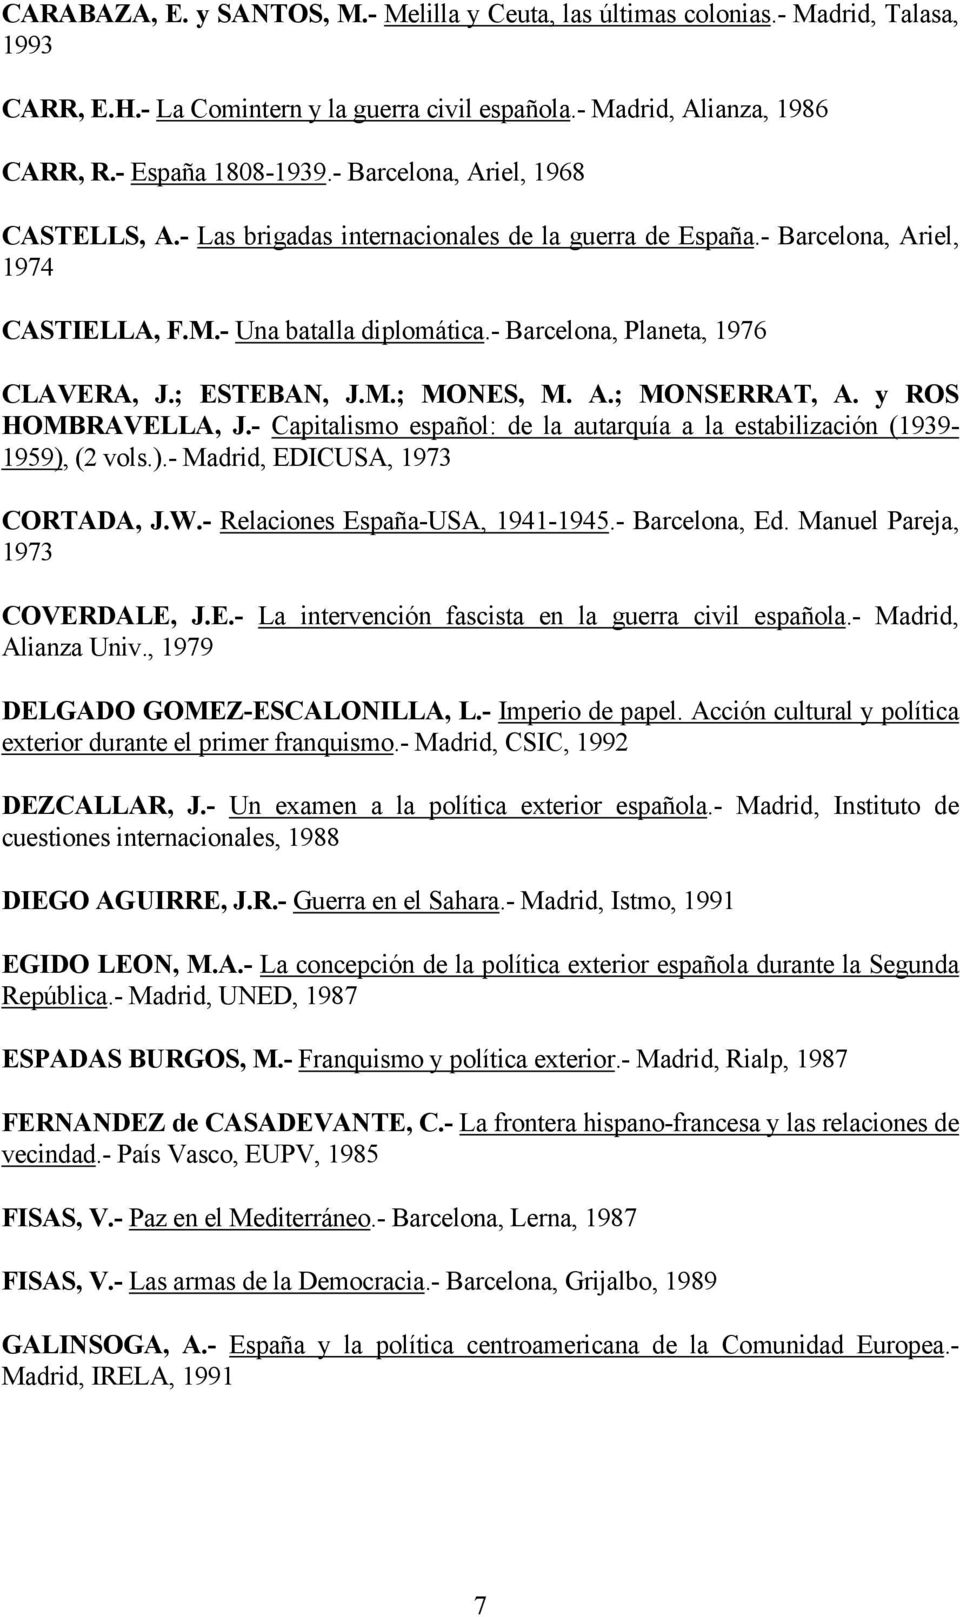 ; ESTEBAN, J.M.; MONES, M. A.; MONSERRAT, A. y ROS HOMBRAVELLA, J.- Capitalismo español: de la autarquía a la estabilización (1939-1959), (2 vols.).- Madrid, EDICUSA, 1973 CORTADA, J.W.